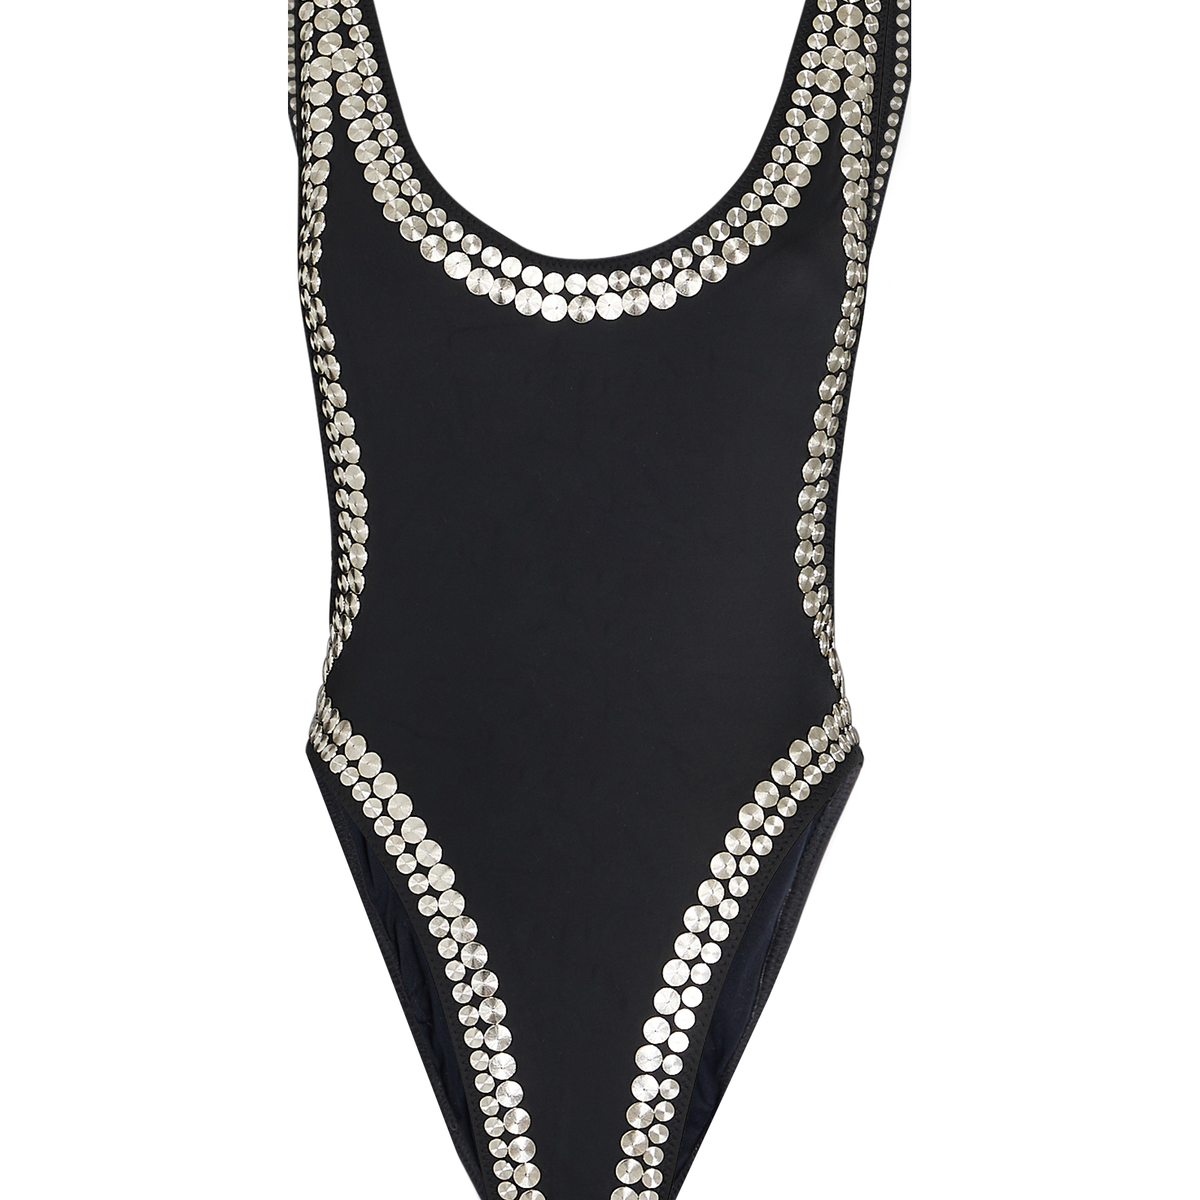 Norma Kamali Marissa Studded One-Piece Swimsuit | INTERMIX®